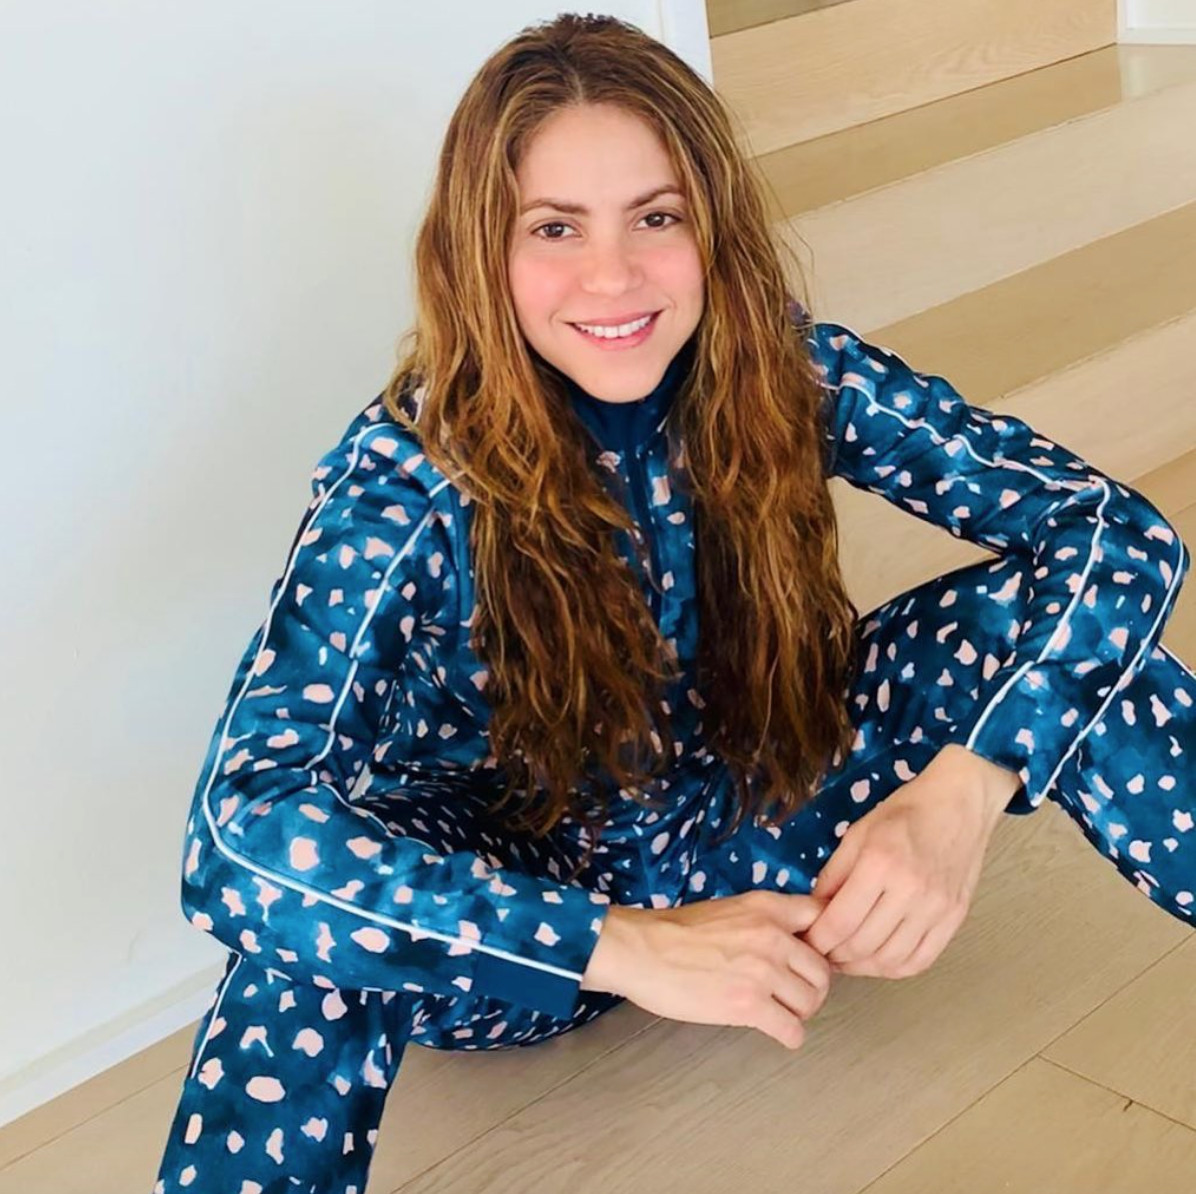 Shakira en pijama